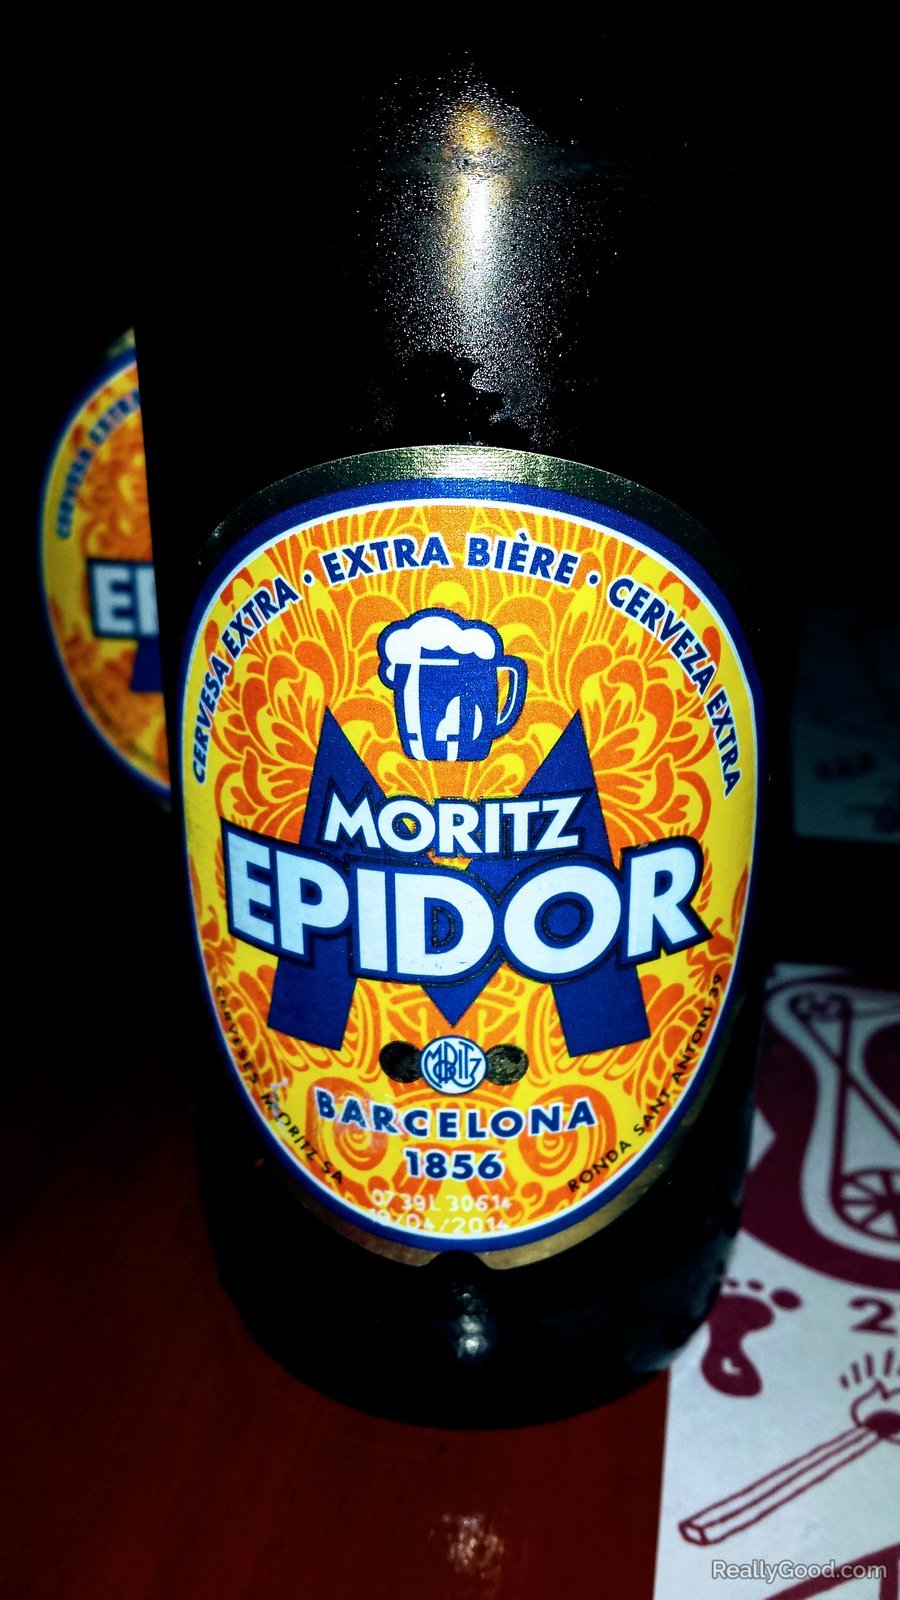 Moritz Epidor Beer